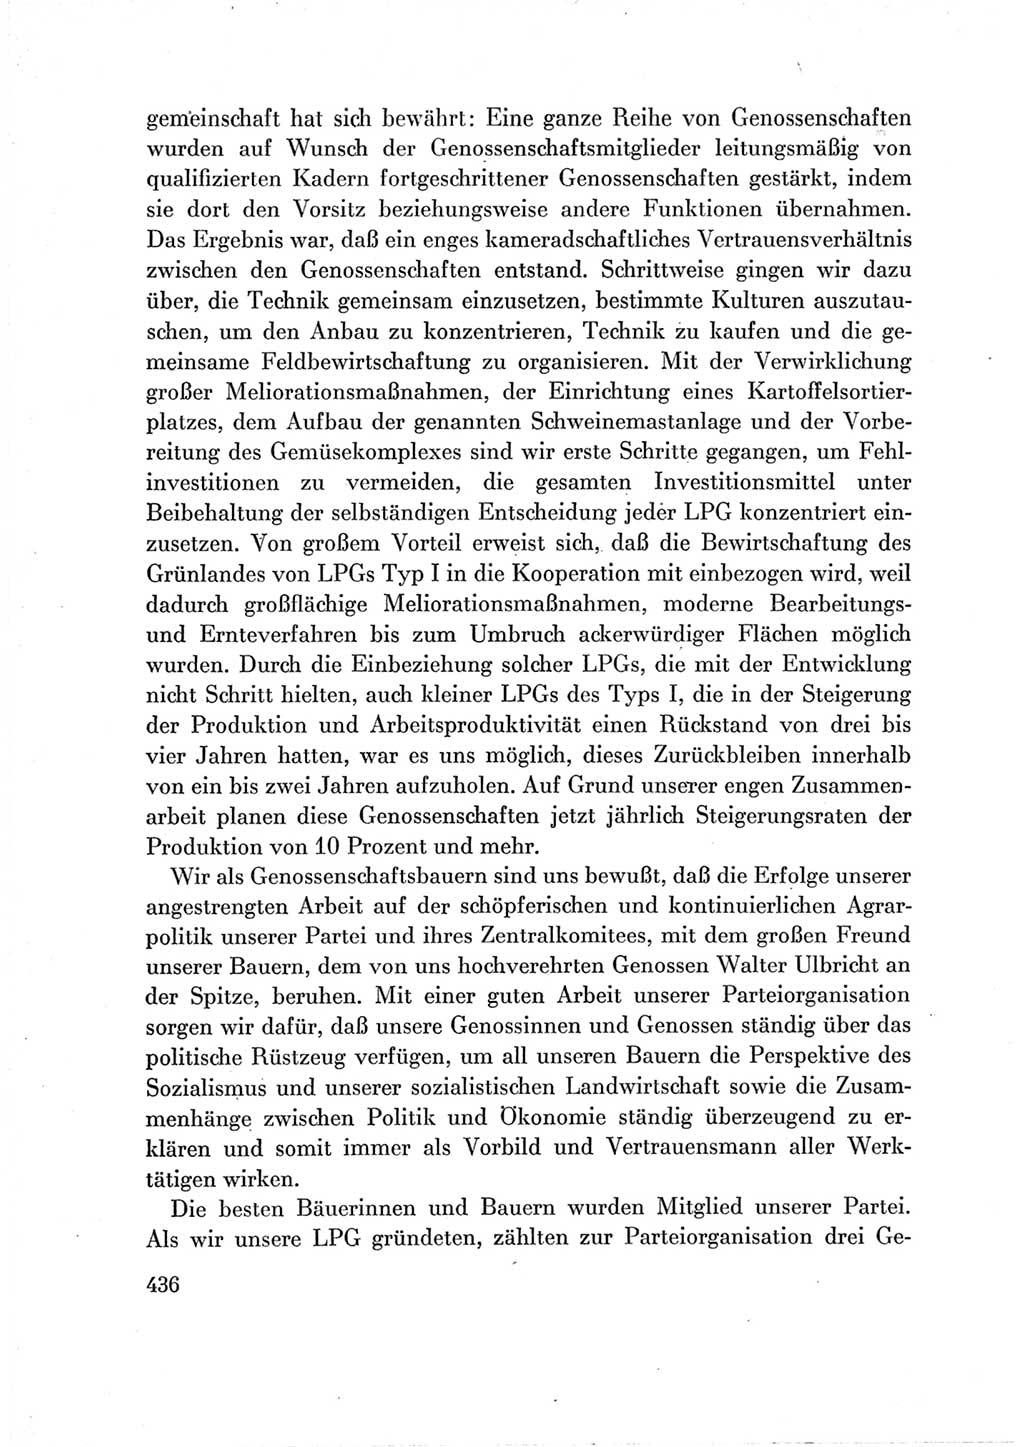 Protokoll der Verhandlungen des Ⅶ. Parteitages der Sozialistischen Einheitspartei Deutschlands (SED) [Deutsche Demokratische Republik (DDR)] 1967, Band Ⅲ, Seite 436 (Prot. Verh. Ⅶ. PT SED DDR 1967, Bd. Ⅲ, S. 436)